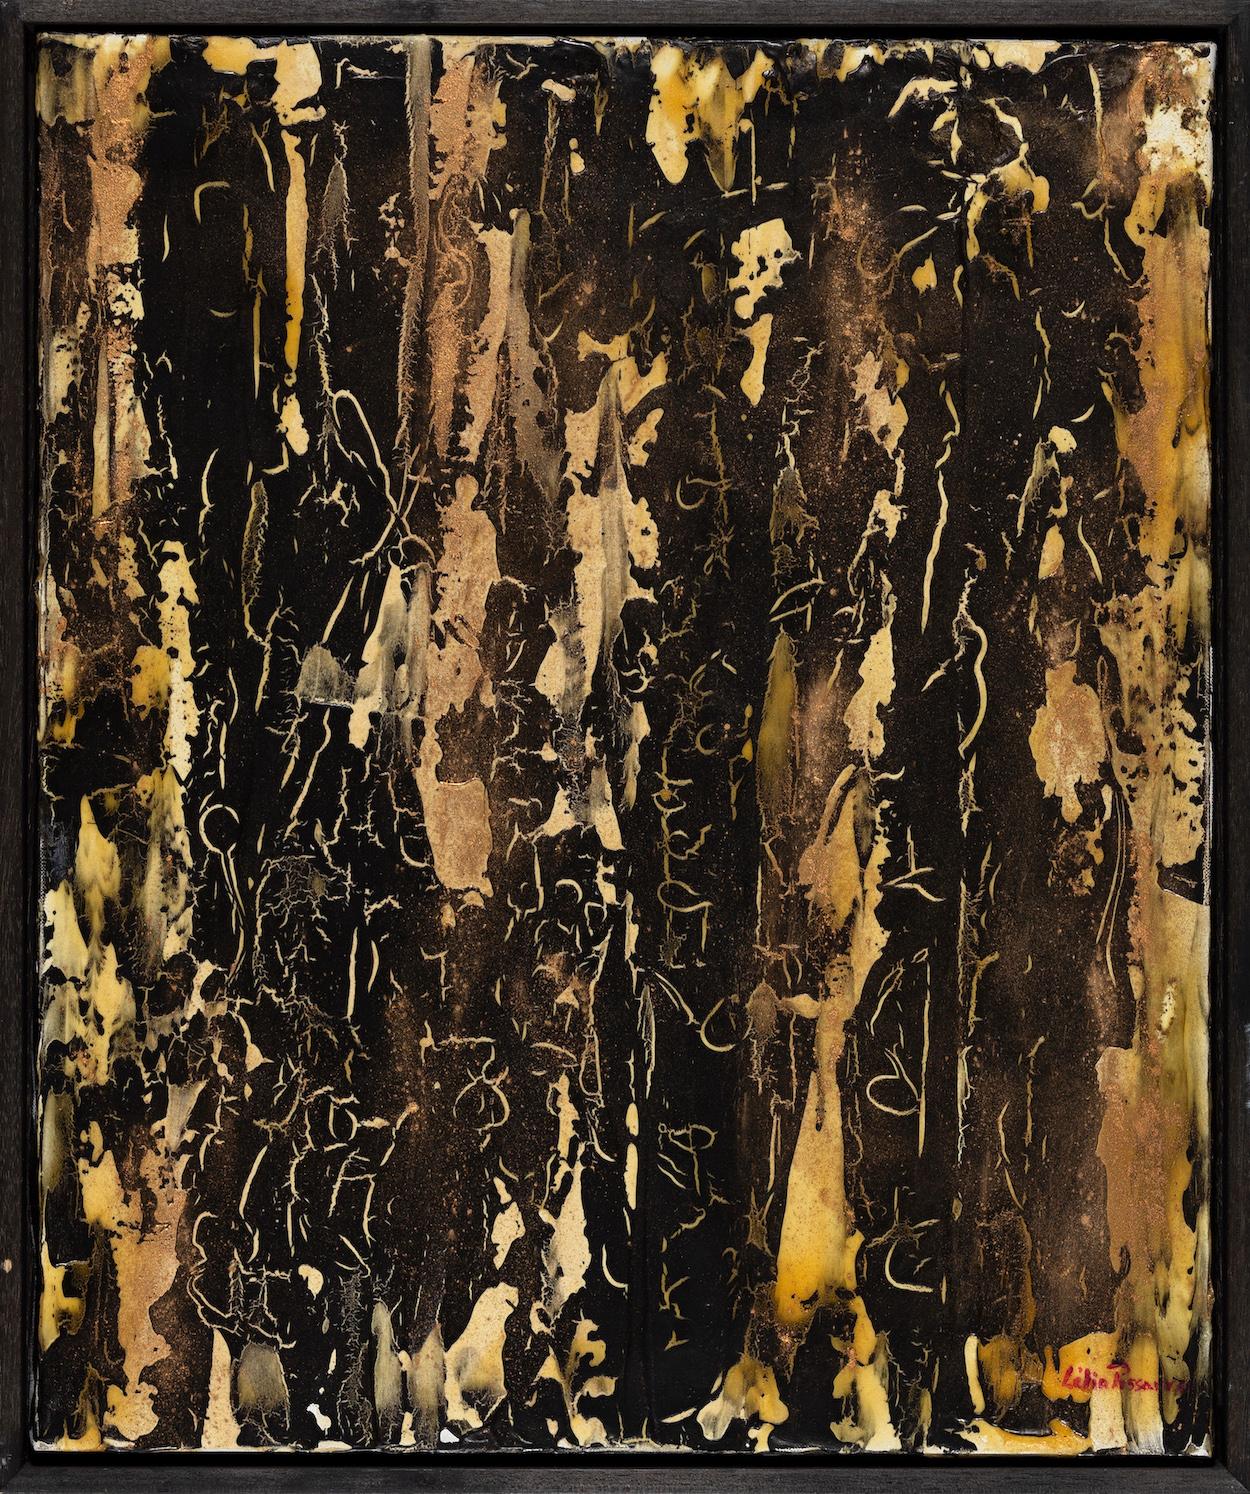 Eine Verbindung und ein Band von Lélia Pissarro
Gemischte Medien auf Leinwand
65 x 54 cm (25 ⅝ x 21 ¼ Zoll)
Unterzeichnet
Ausgeführt im Jahr 2008

Literatur:
Lélia Pissarro, Die Farben des Schweigens, London, 2010, S. 87 (illustriert)